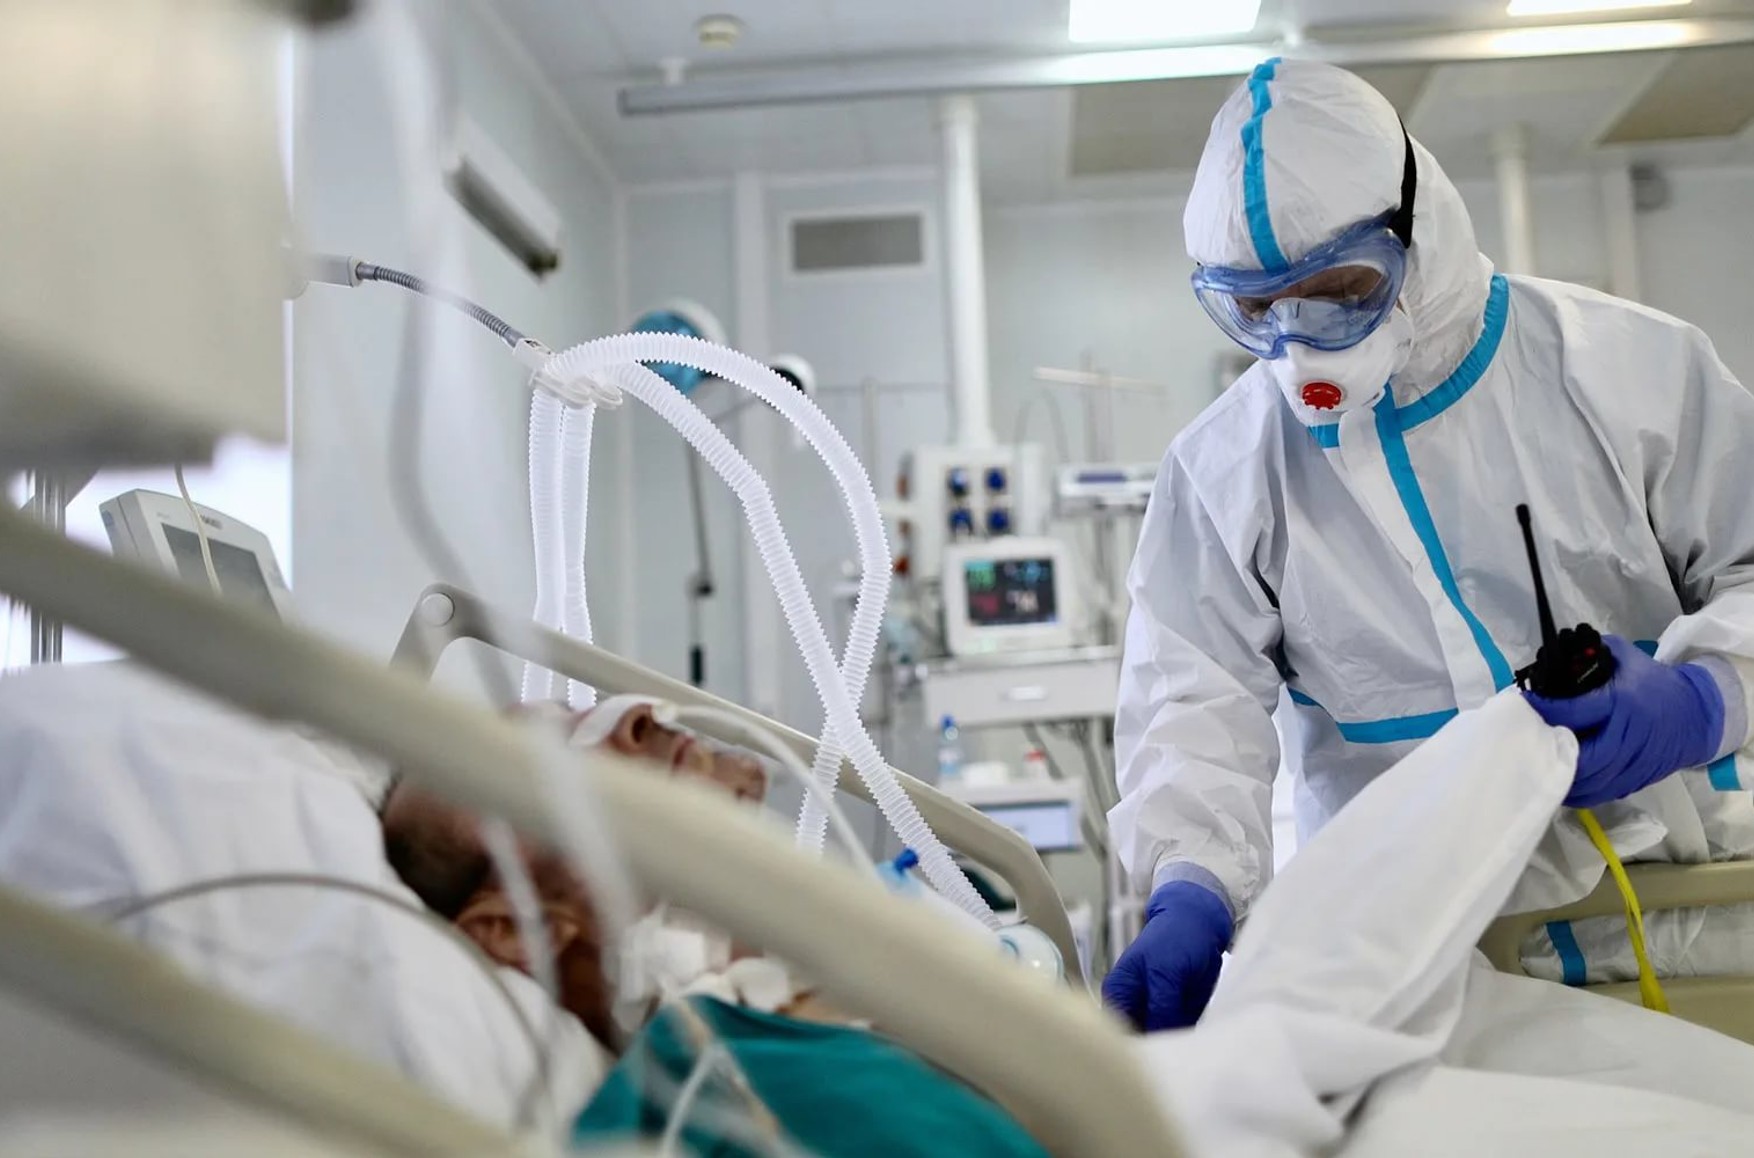 У Ростові-на-Дону завели справу після смерті близько 20 пацієнтів в «ковідной» лікарні